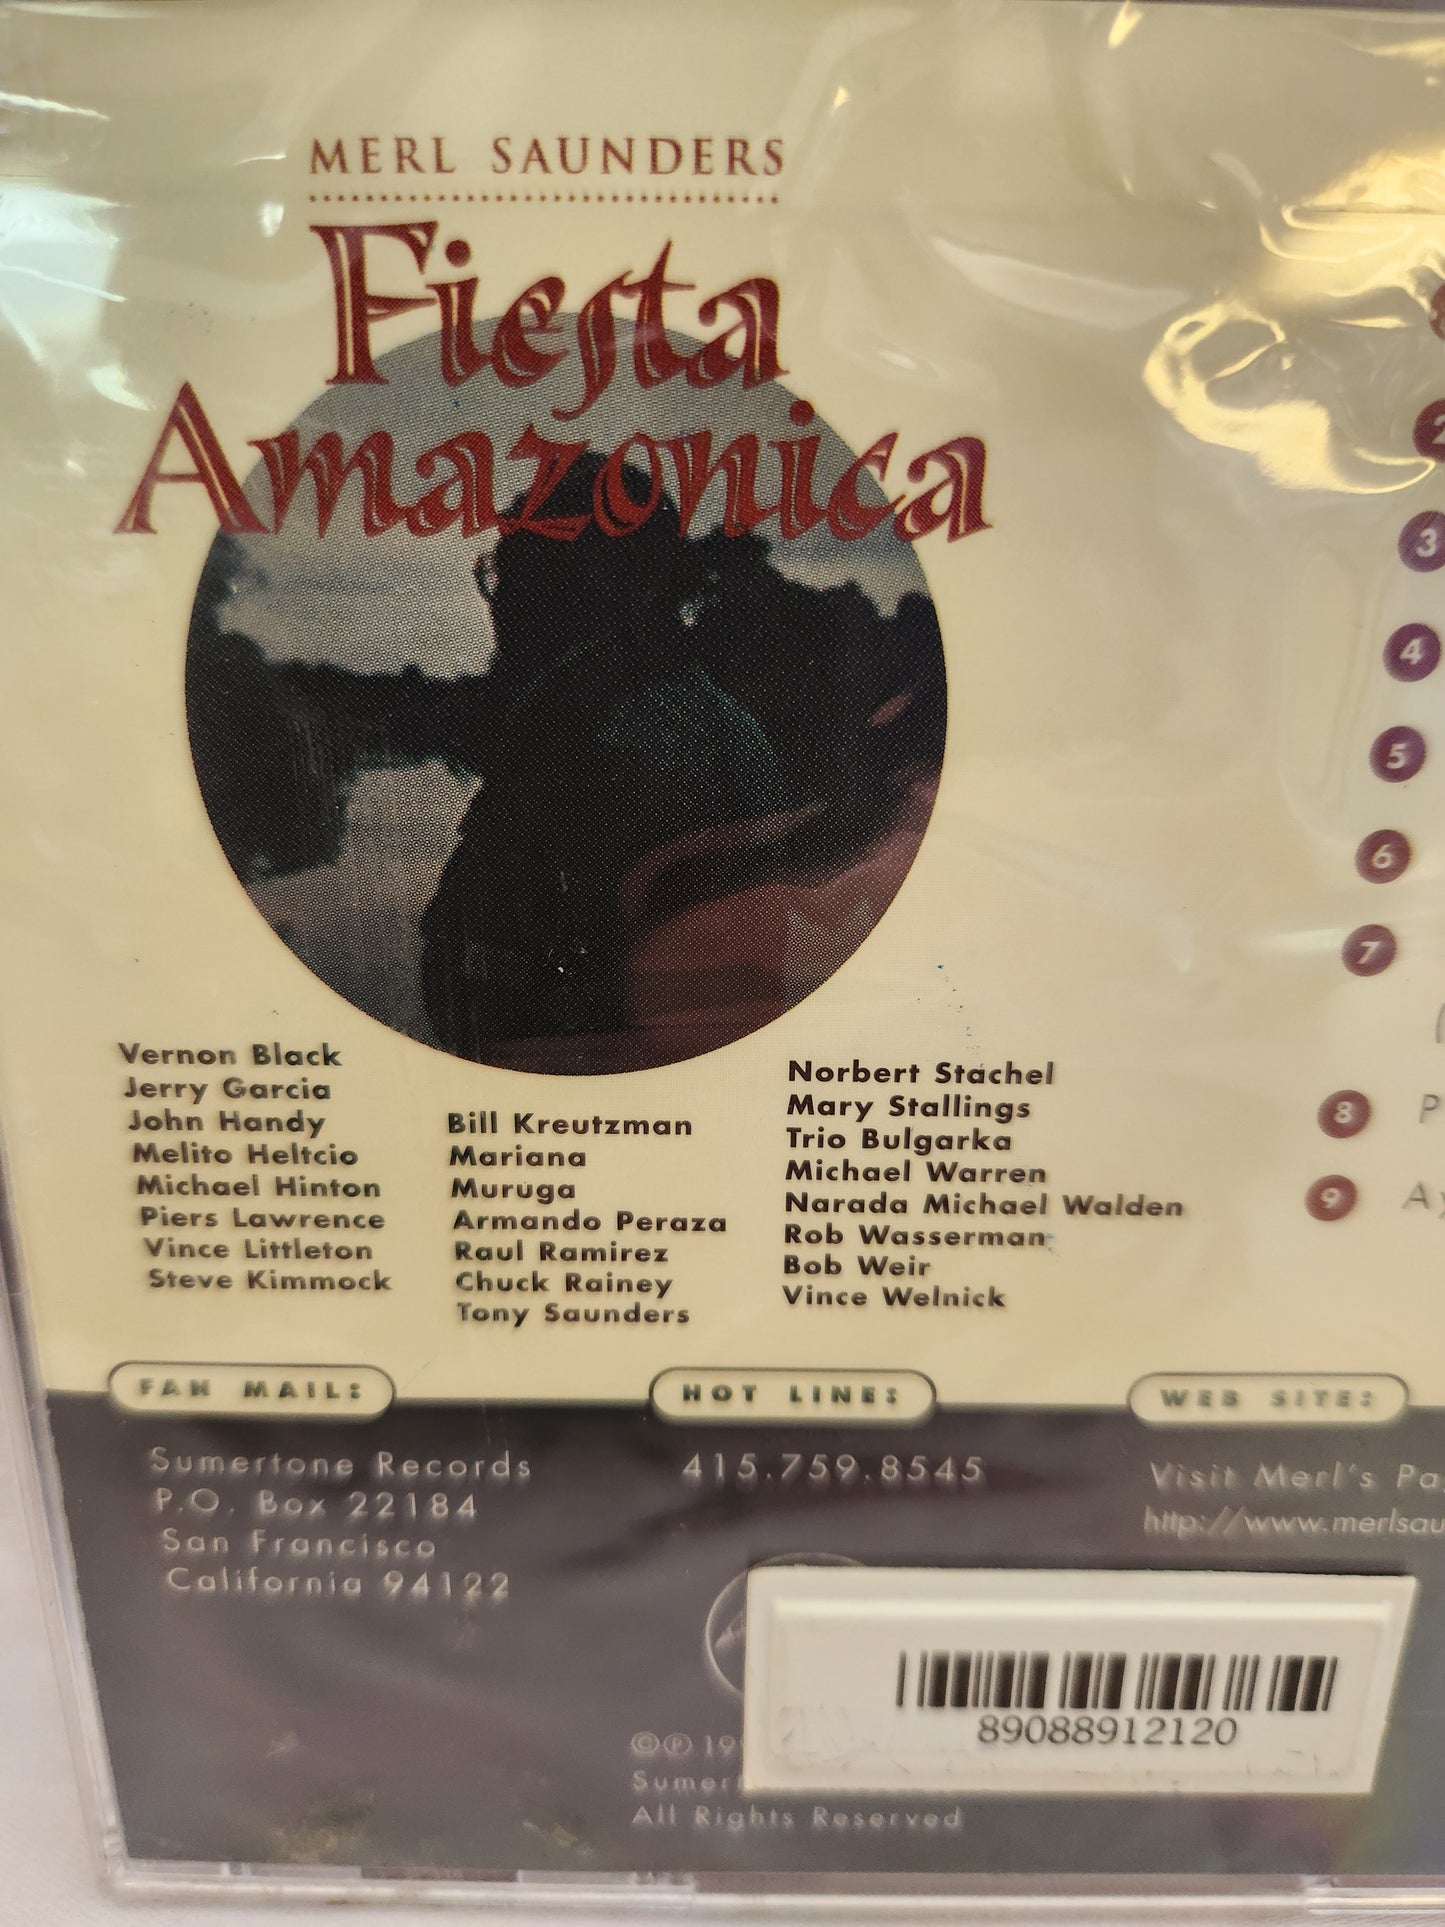 1997 - Merl Saunders: Fiesta Amazonica CD